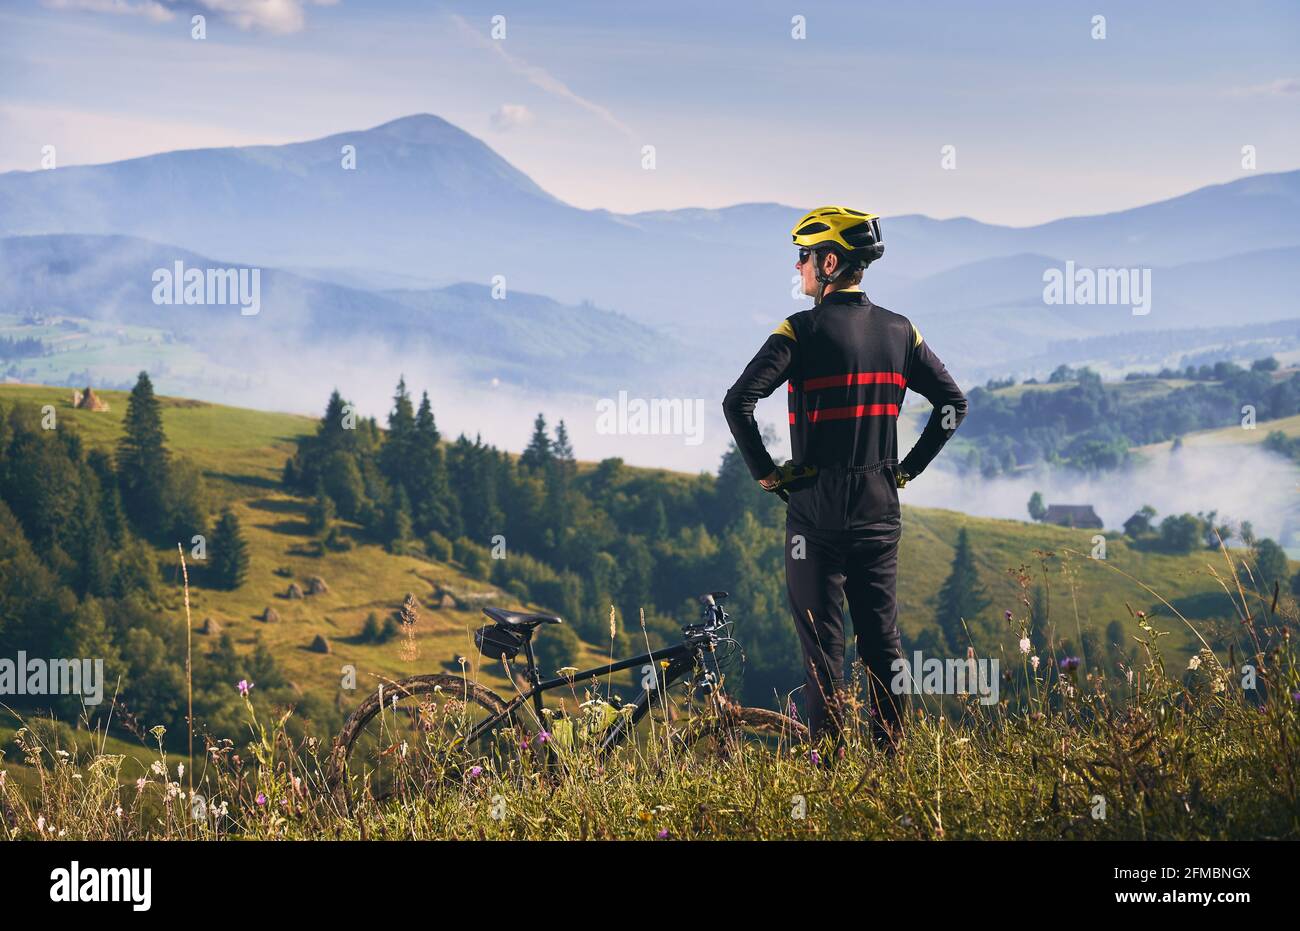 Rückansicht eines Radfahrers in Uniform und Helm, der auf einem Hügel steht und die wunderschöne Berglandschaft beobachtet. Am frühen Morgen in den neblig sonnigen Bergen. Konzept der Einheit mit der Natur Stockfoto